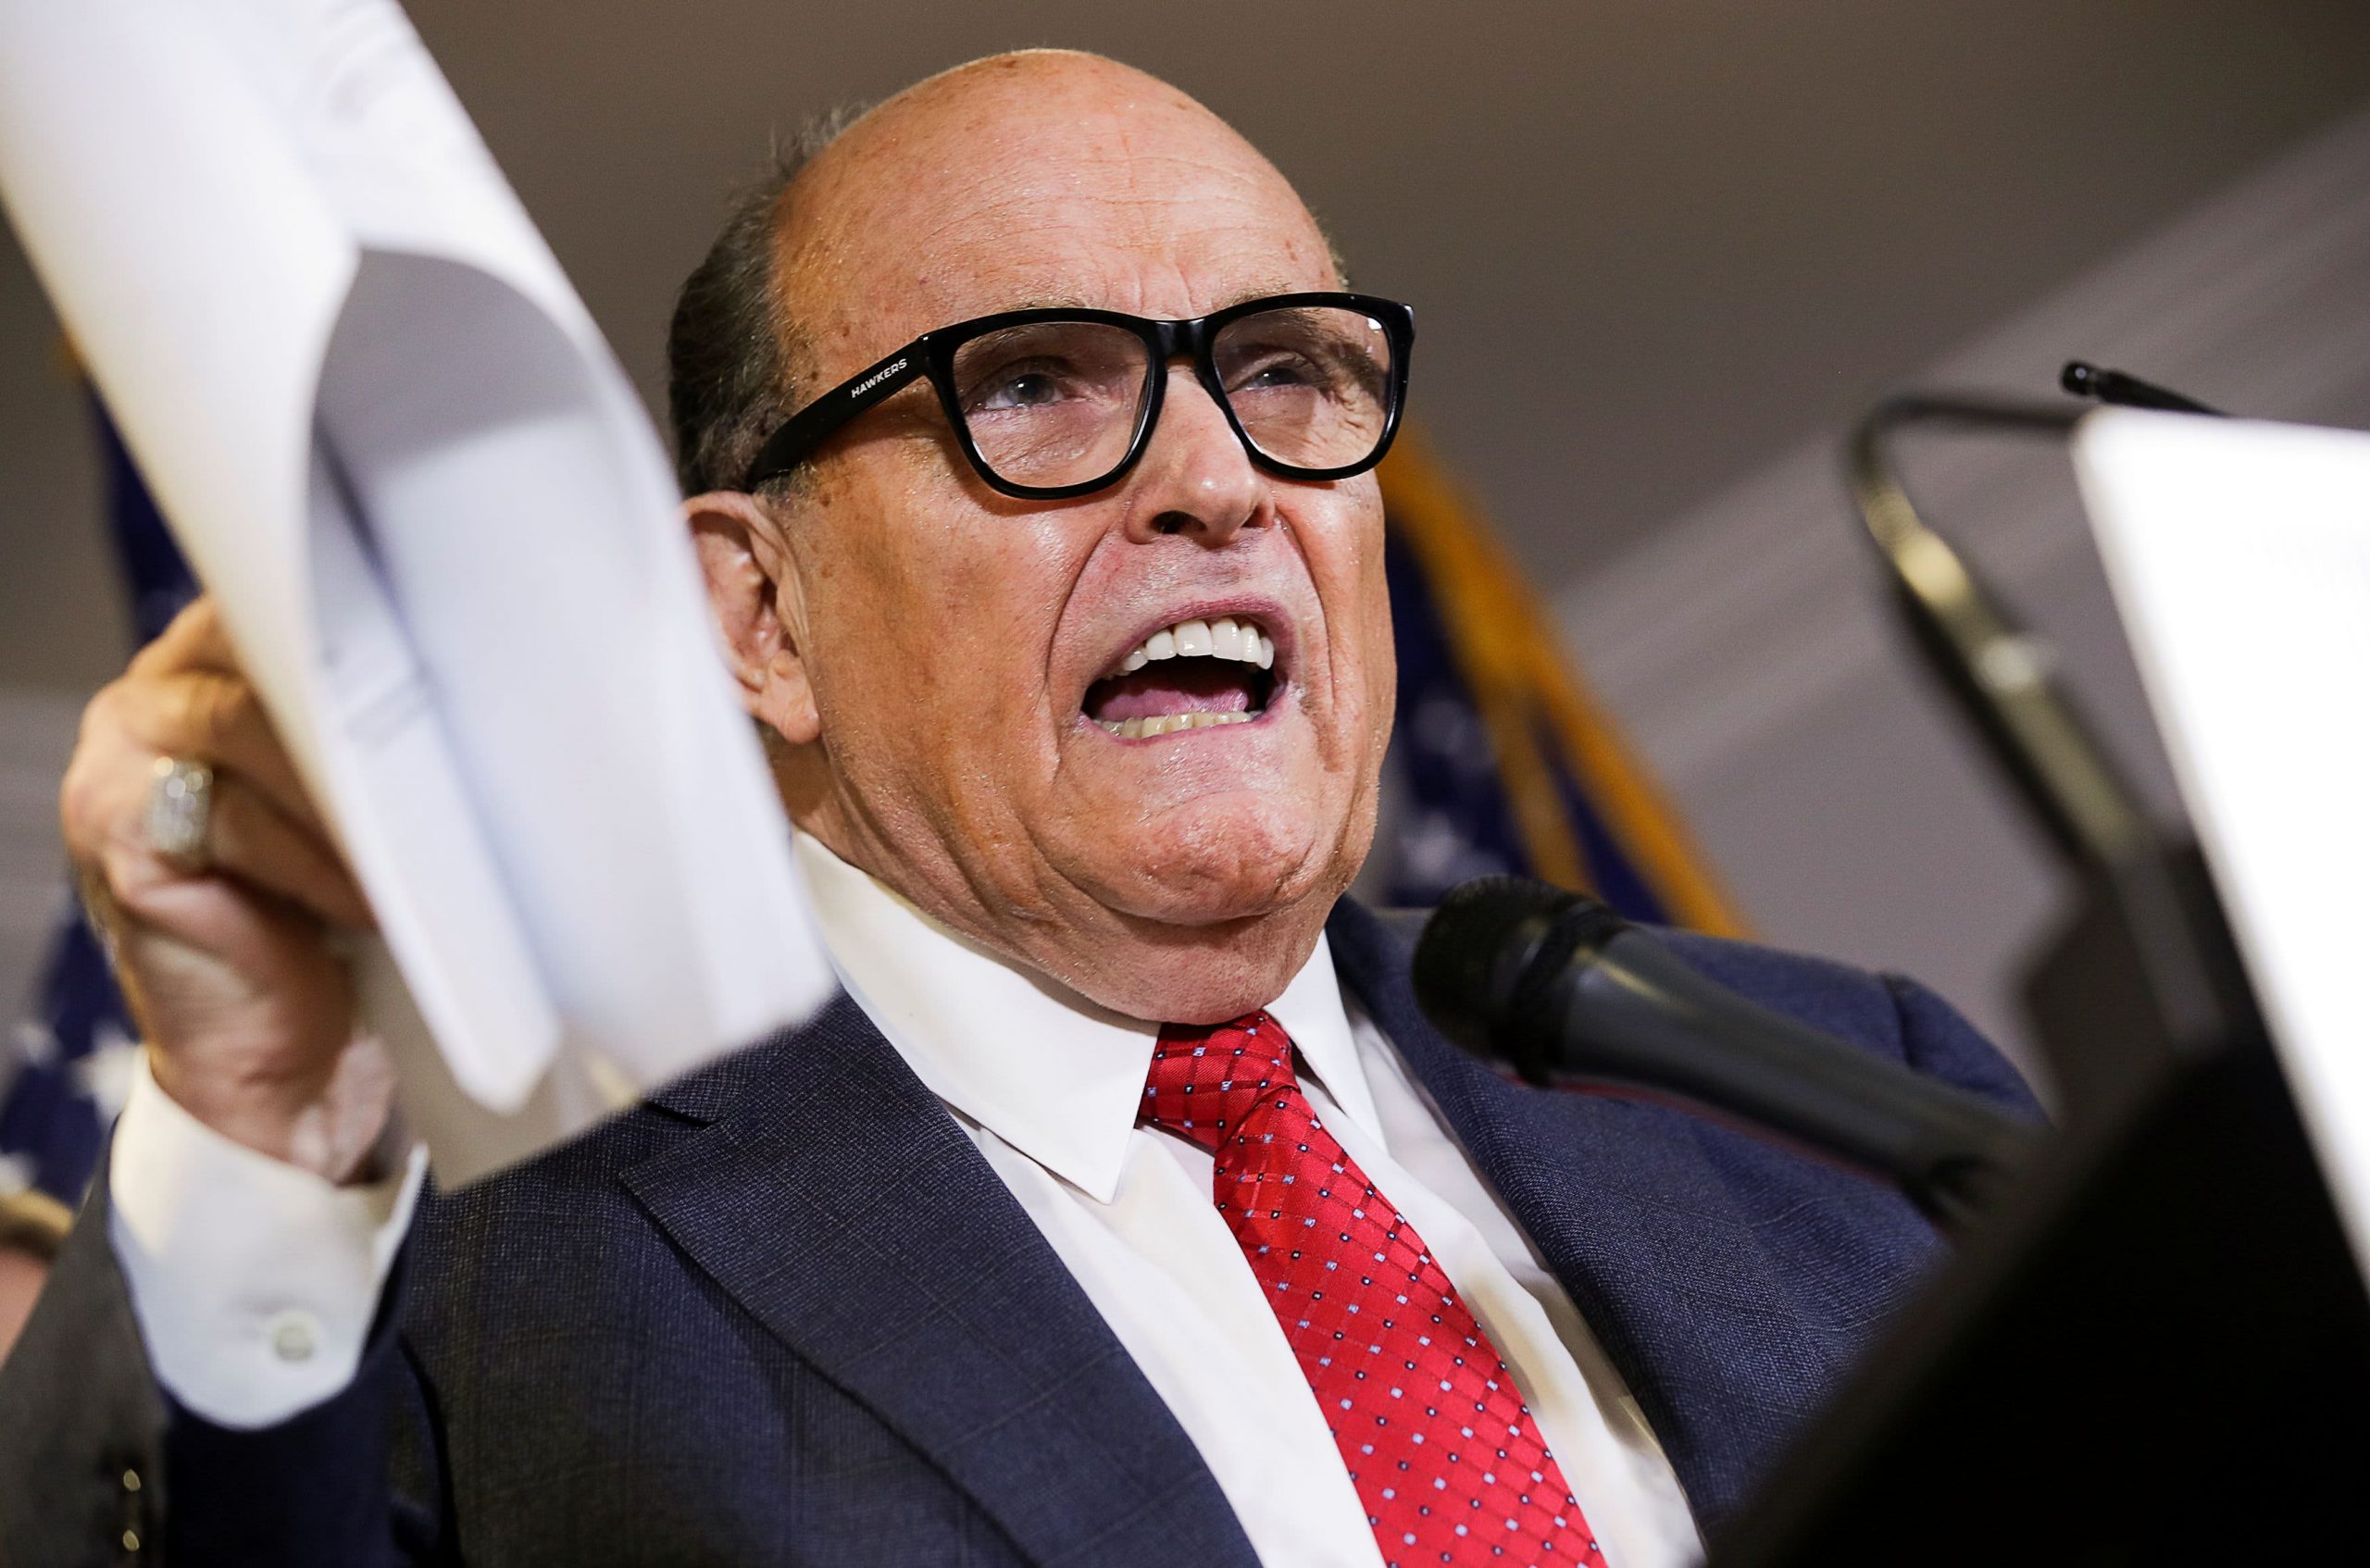 Los abogados de Rudy Giuliani citan las comunicaciones con Trump mientras desafían la legitimidad de la búsqueda de cuentas de iCloud de 2019
